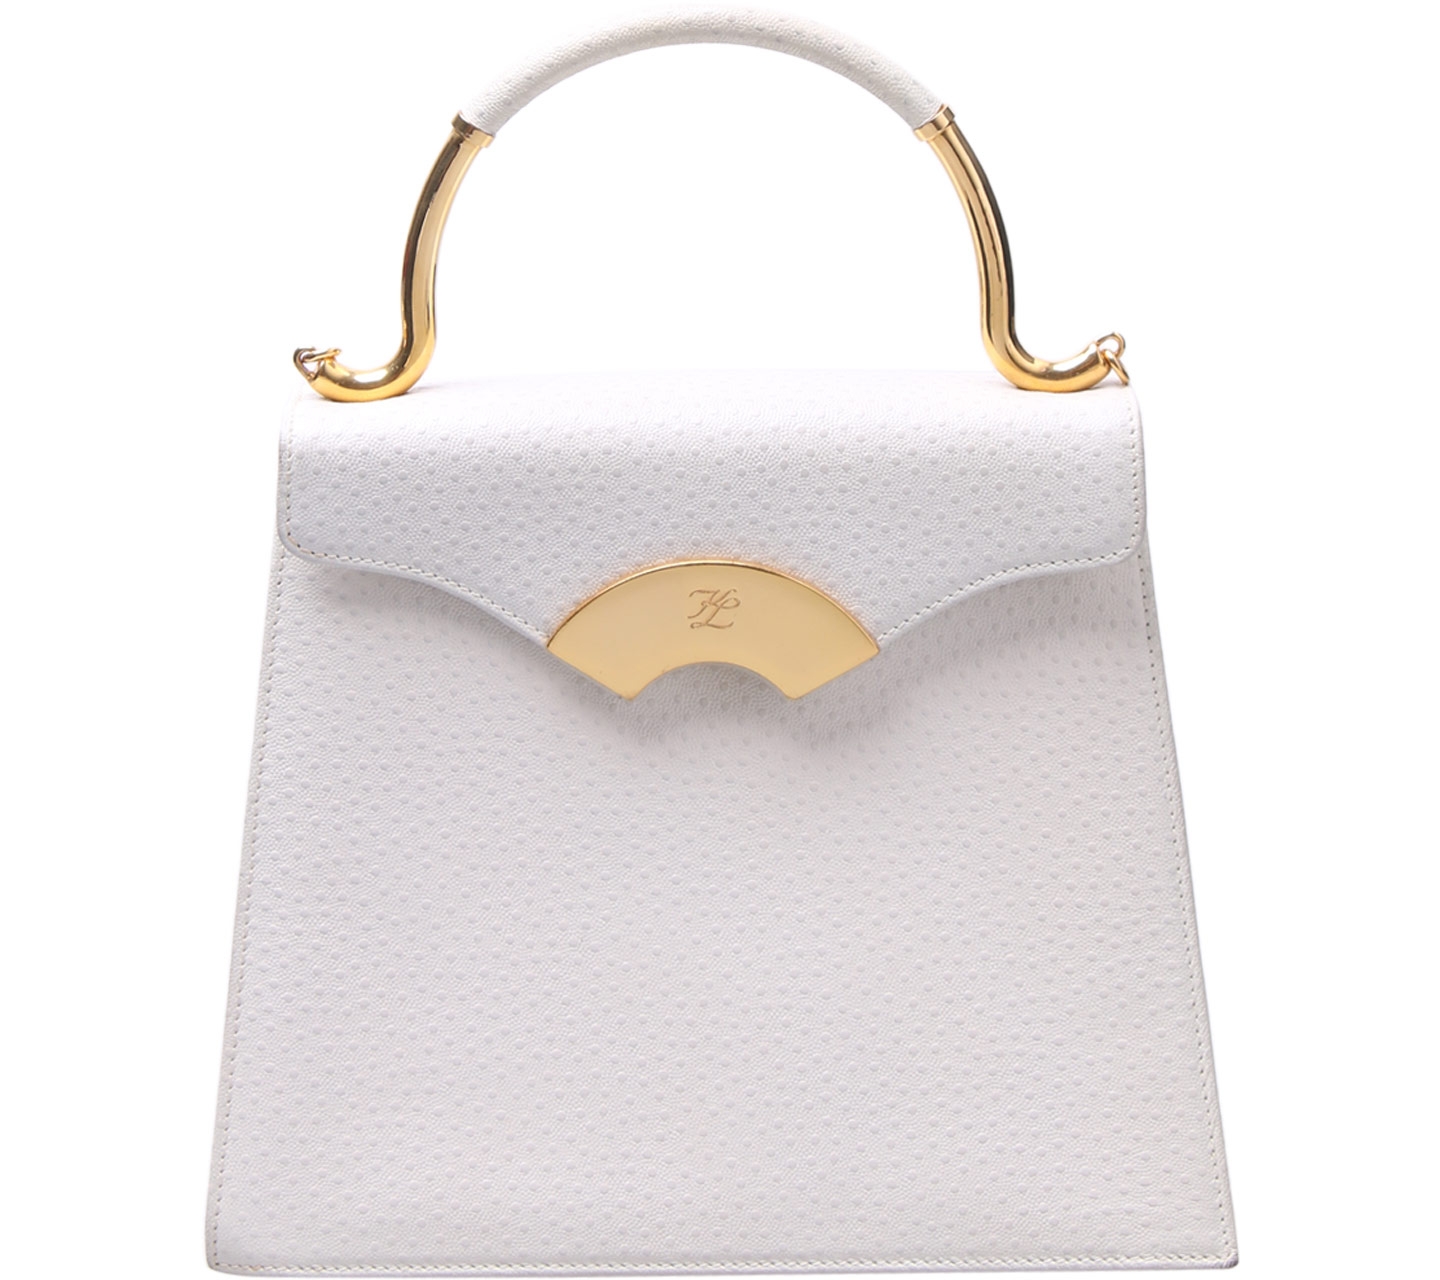 Karl Lagerfeld White And Gold Handbag